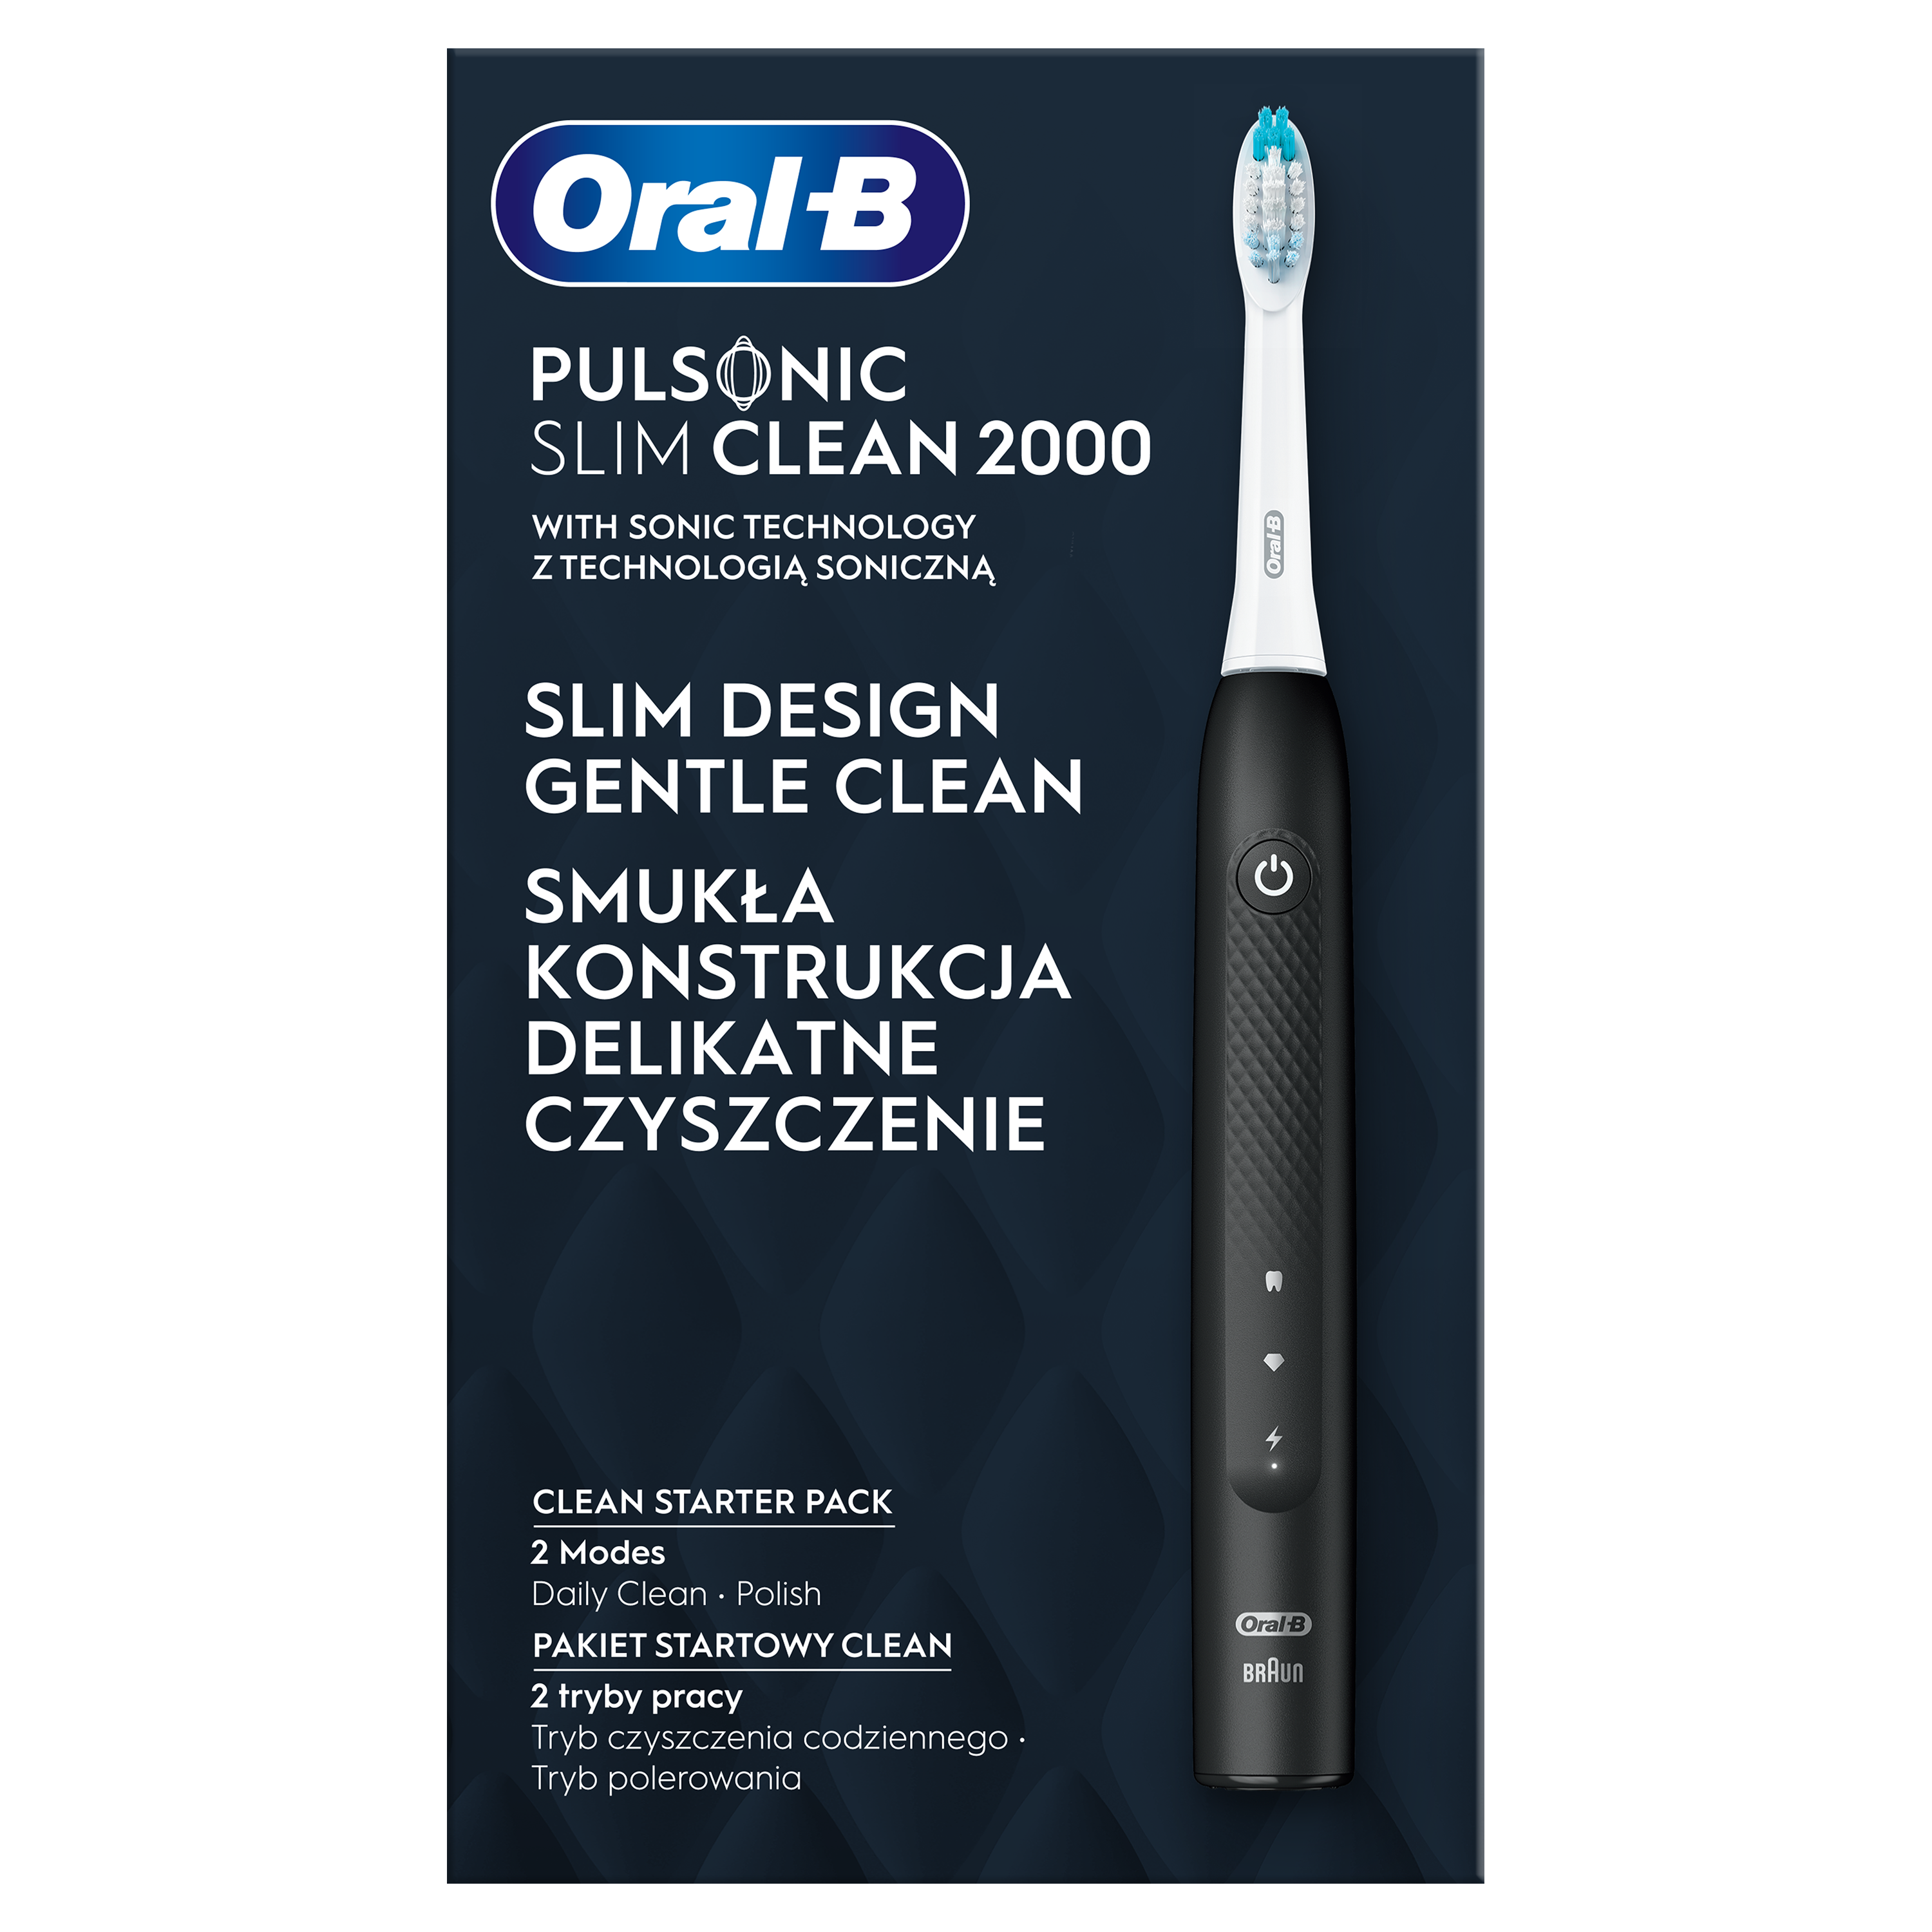 Электрическая зубная щетка Oral-B Pulsonic Slim Clean 2000 S111.513.2 типа 3748, черный - фото 2